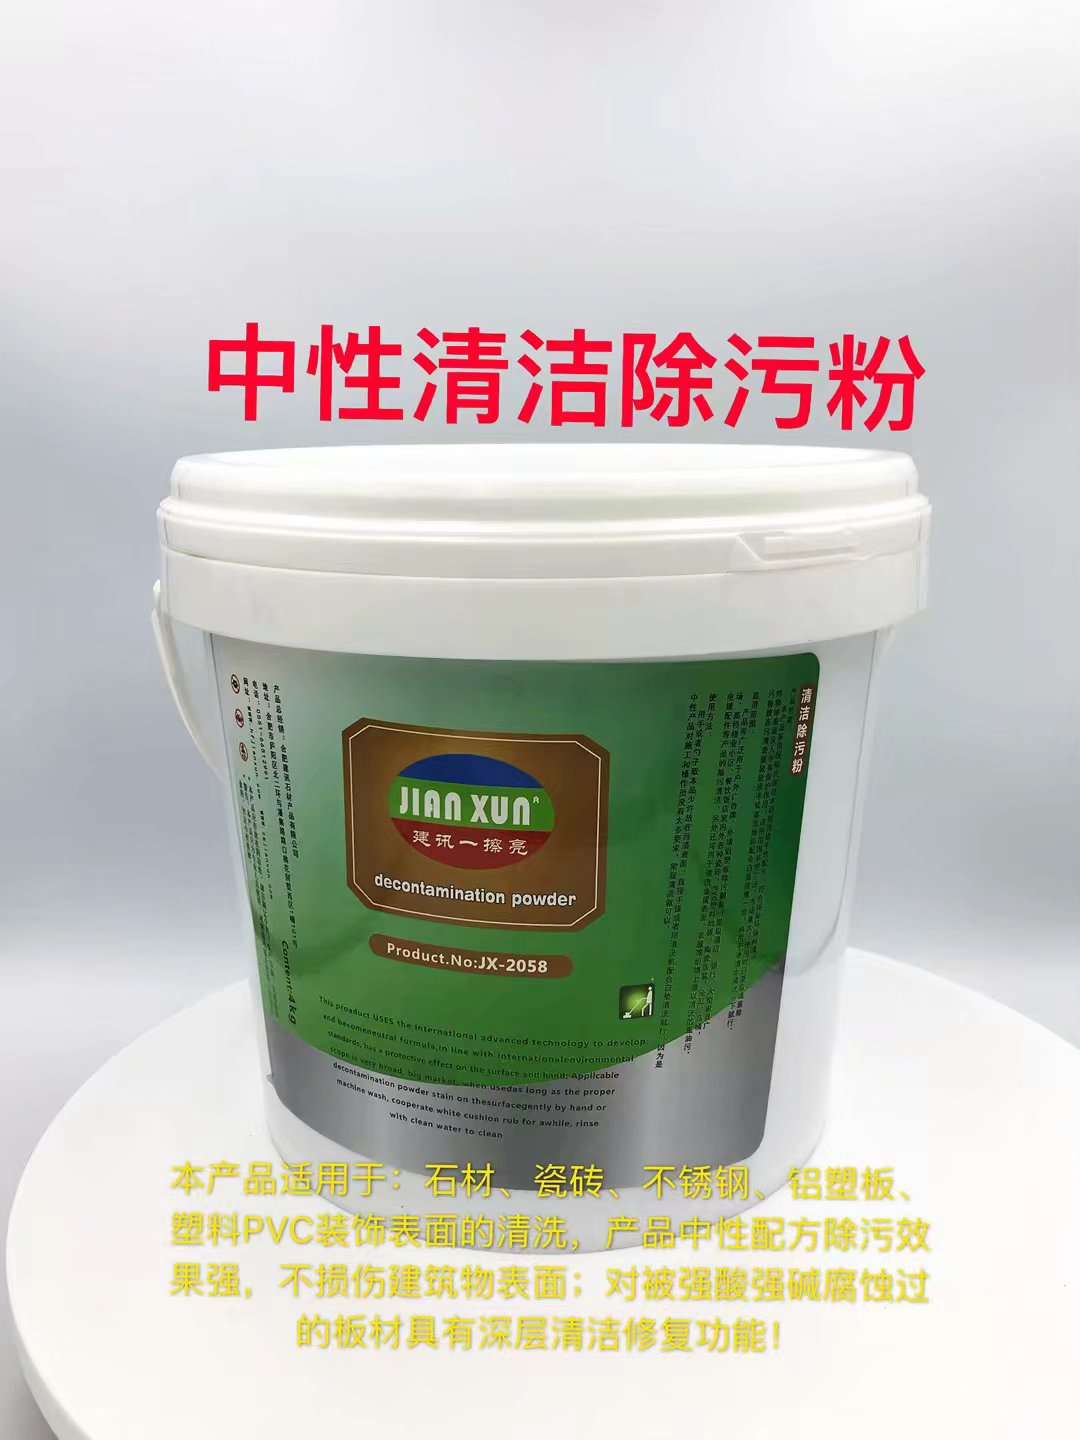 JX-2058中性清洁除污粉生产厂家销售批发价格 合肥建讯